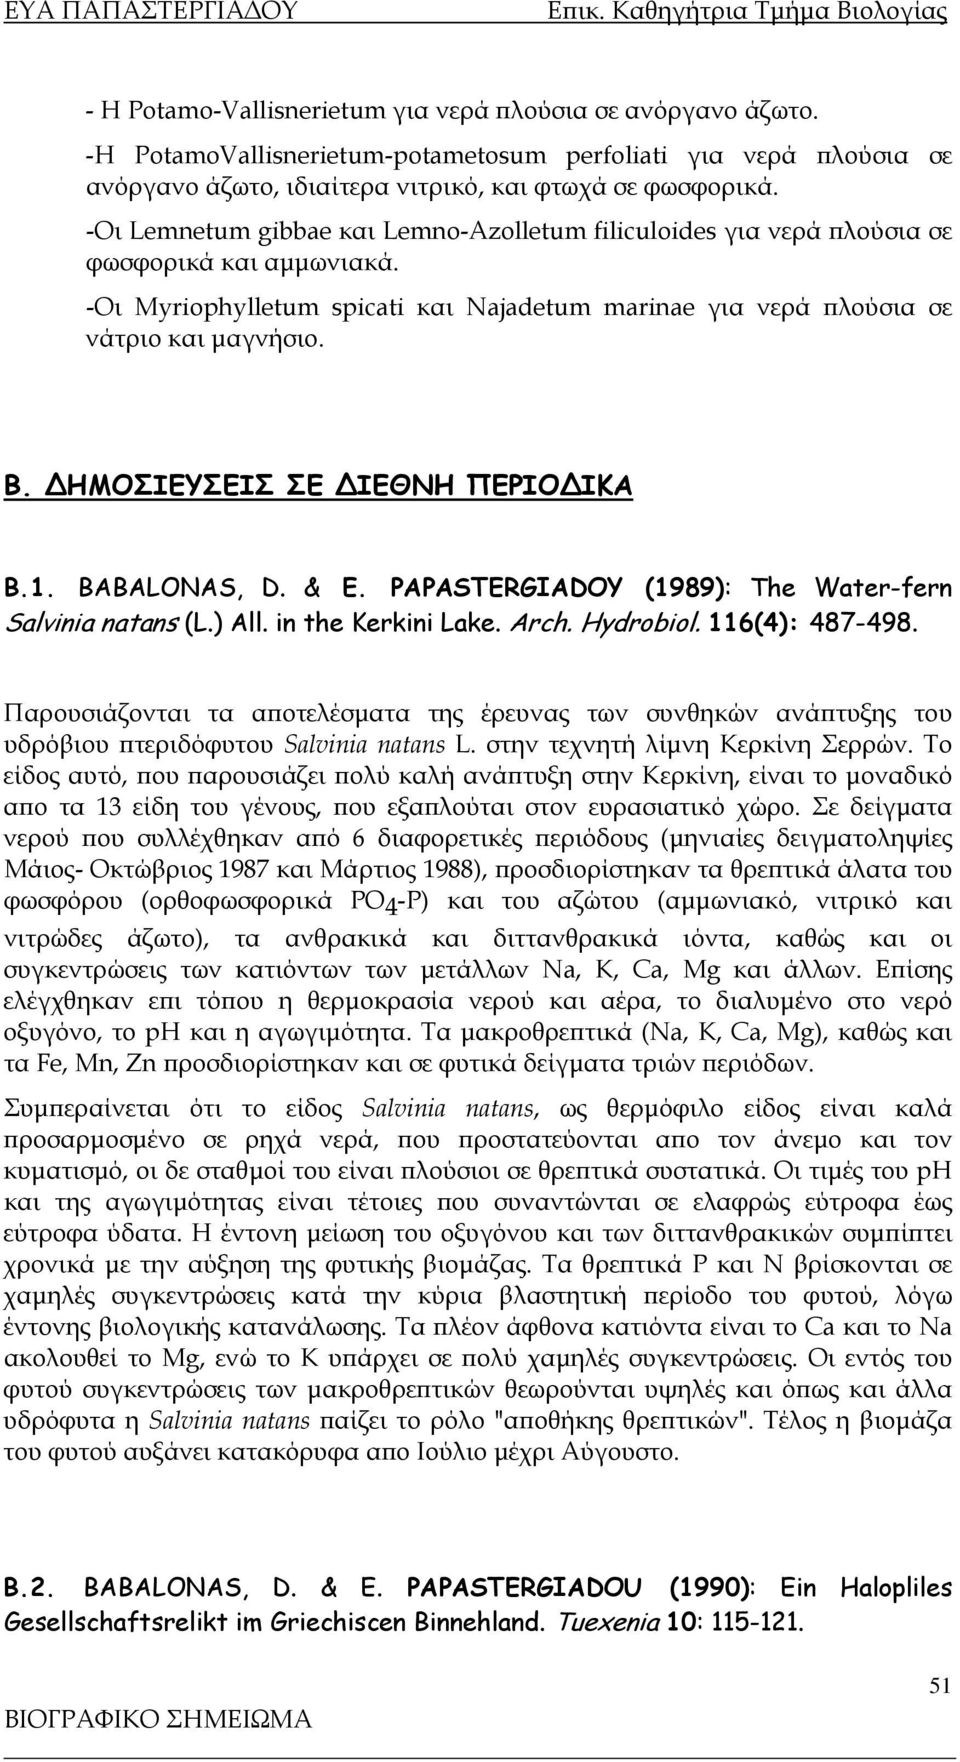 ΗΜΟΣΙΕΥΣΕΙΣ ΣΕ ΙΕΘΝΗ ΠΕΡΙΟ ΙΚΑ Β.1. ΒABALONAS, D. & E. PAPASTERGIADOY (1989): The Water-fern Salvinia natans (L.) All. in the Kerkini Lake. Arch. Hydrobiol. 116(4): 487-498.